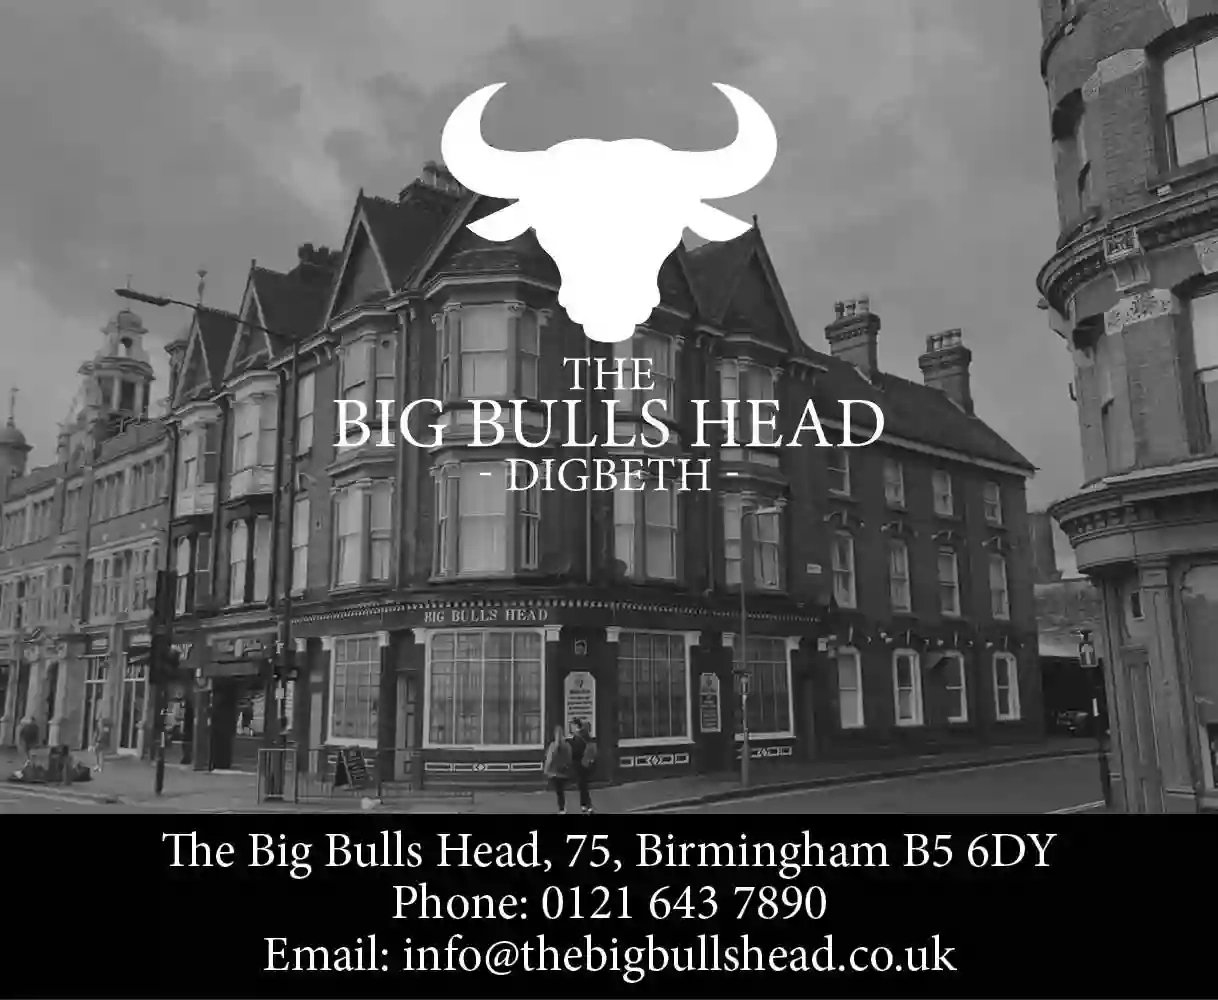 The Big Bulls Head